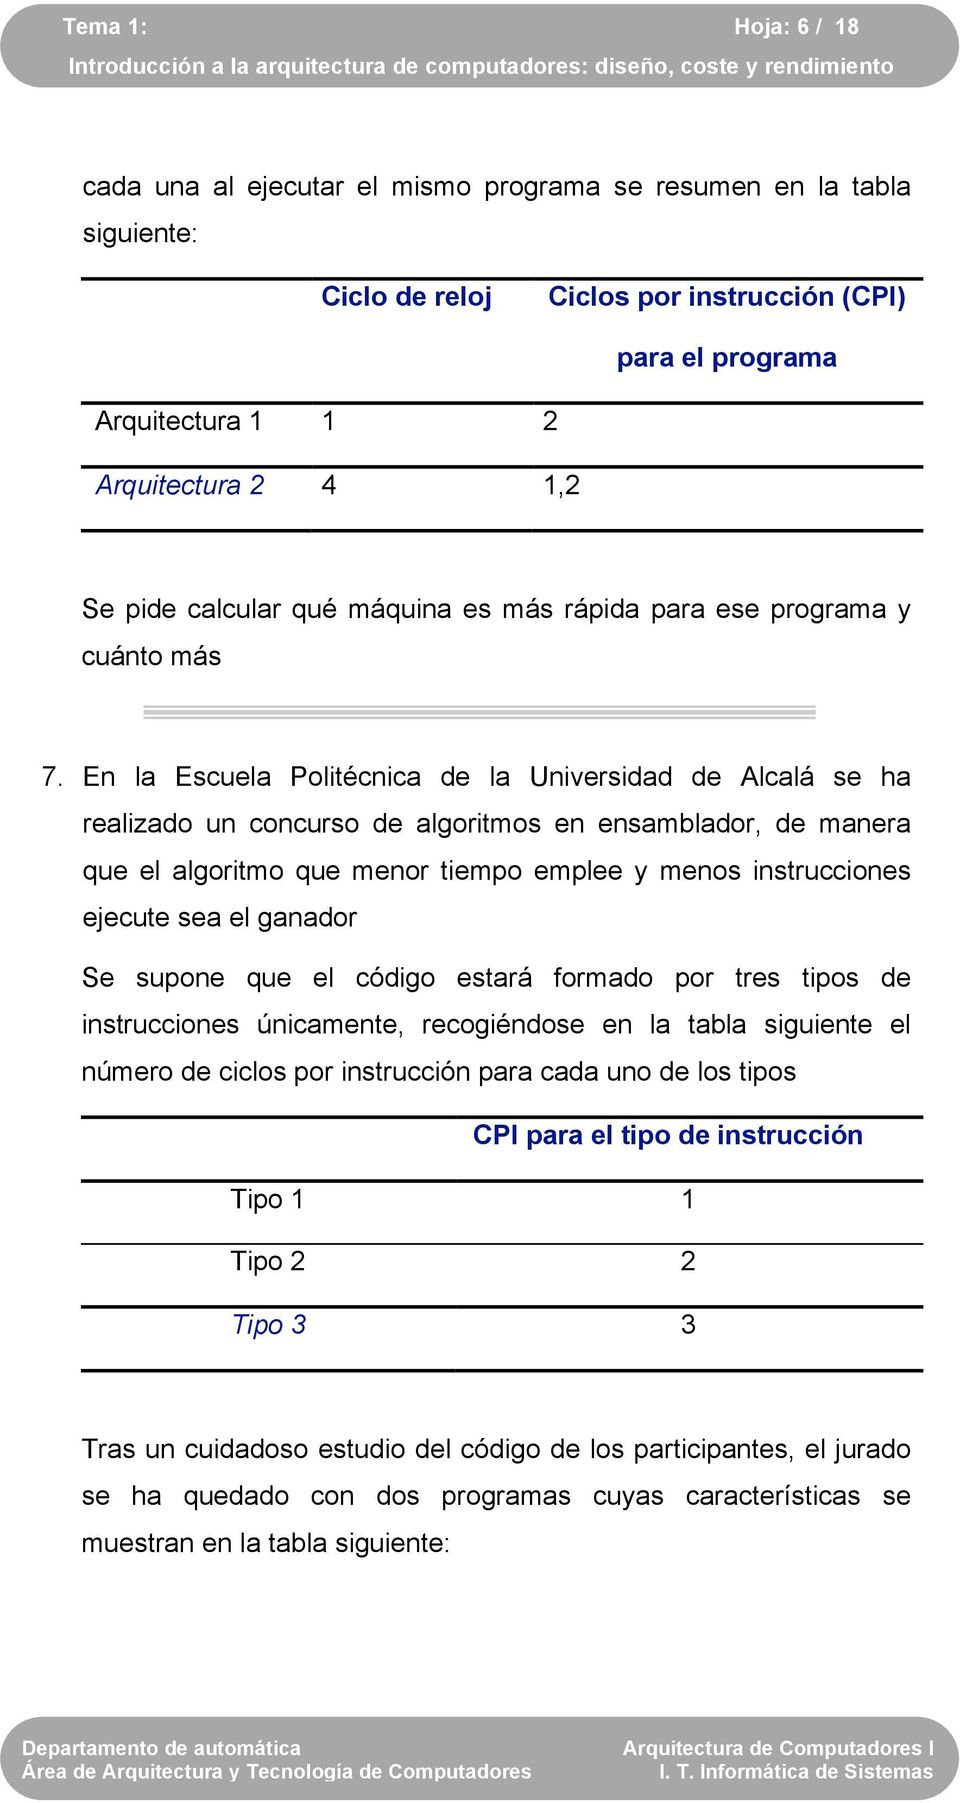 En la Escuela Politécnica de la Universidad de Alcalá se ha realizado un concurso de algoritmos en ensamblador, de manera que el algoritmo que menor tiempo emplee y menos instrucciones ejecute sea el